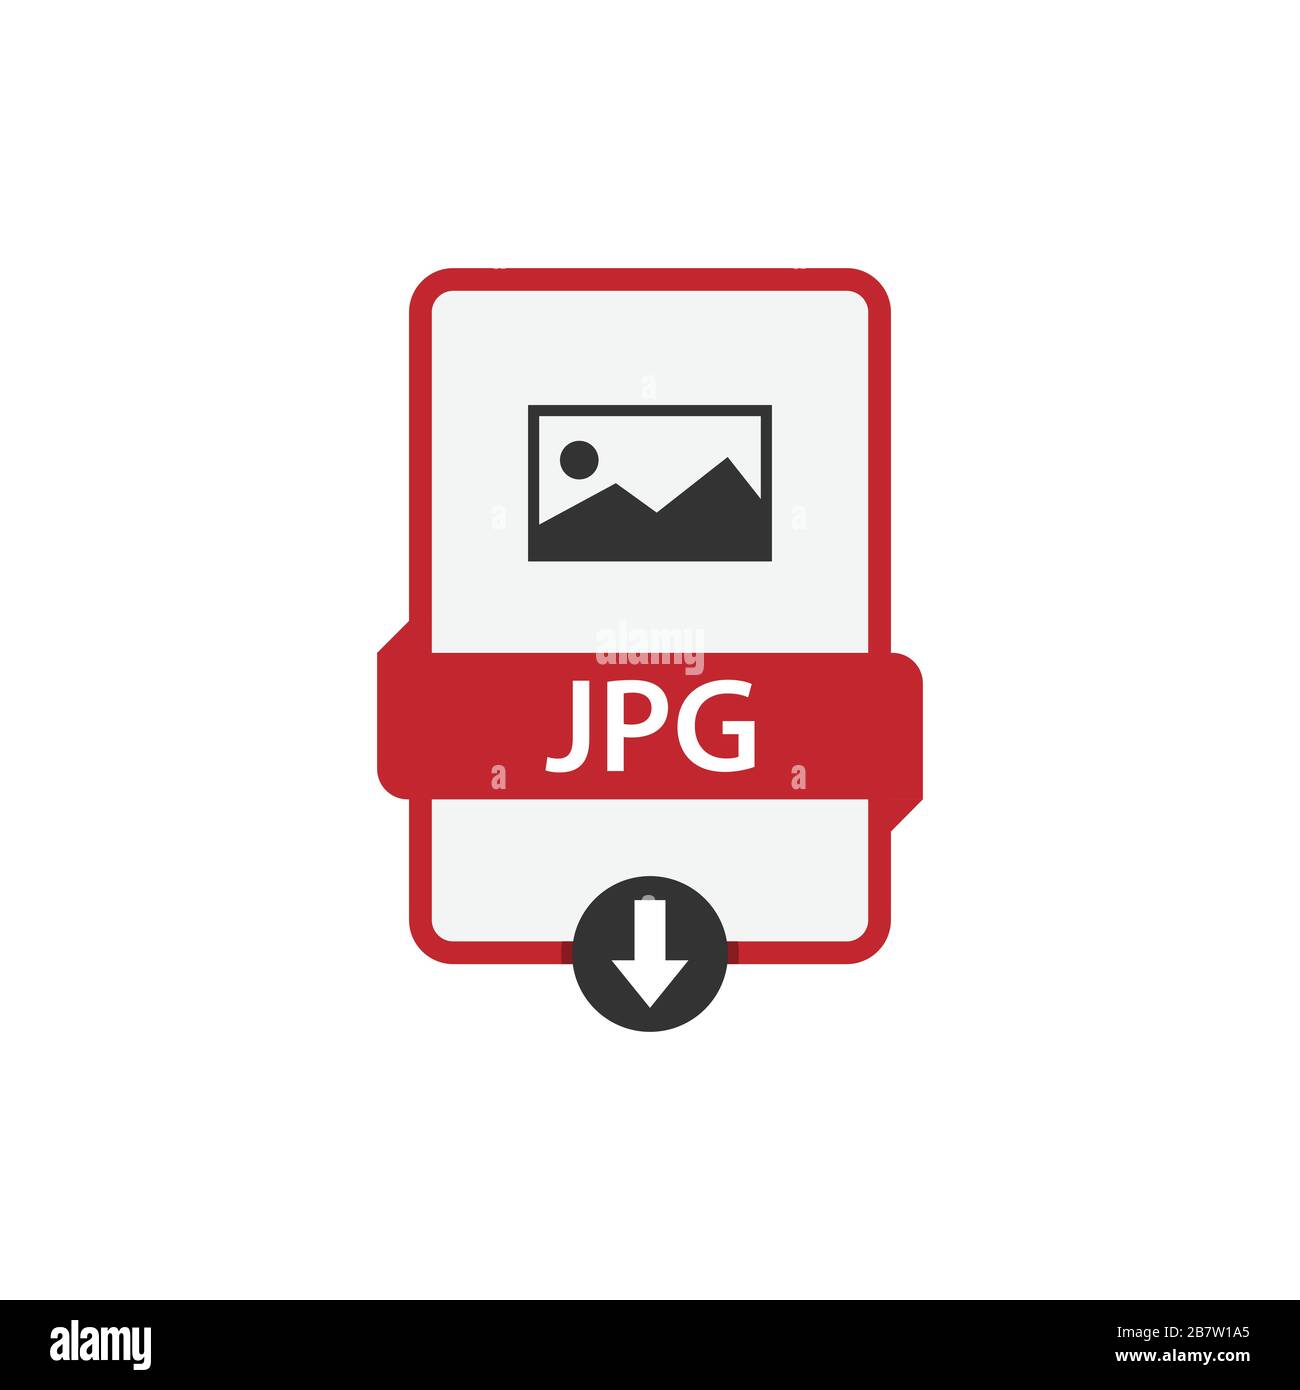 JPG scarica immagine vettoriale formato file. Vettore grafico disegno piatto icona file JPG Illustrazione Vettoriale